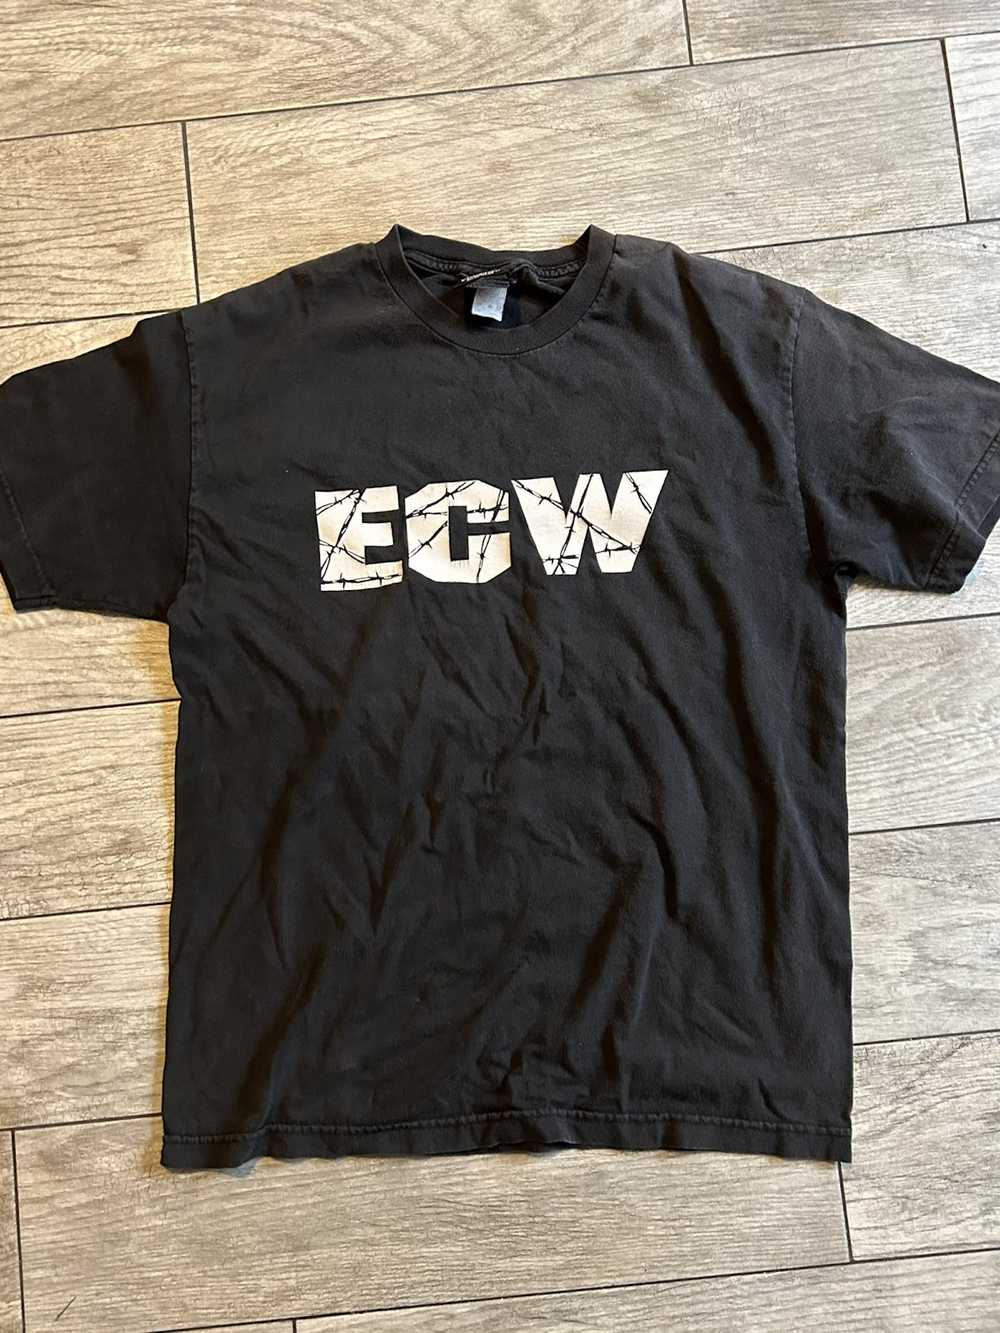 Vintage WWE “ECW” T shirt - image 1